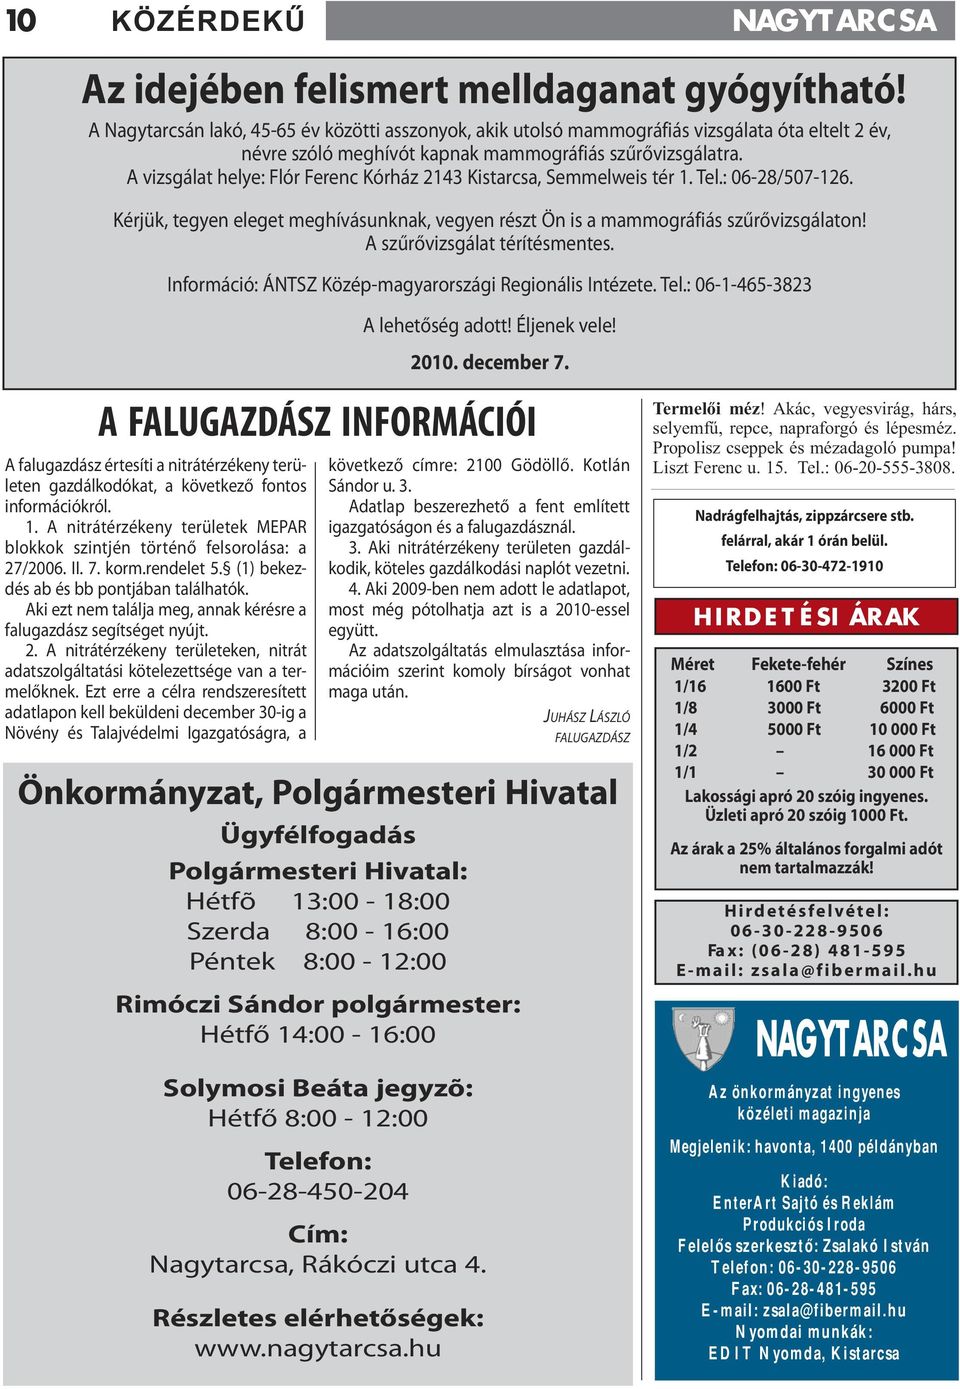 A vizsgálat helye: Flór Ferenc Kórház 2143 Kistarcsa, Semmelweis tér 1. Tel.: 06-28/507-126. Kérjük, tegyen eleget meghívásunknak, vegyen részt Ön is a mammográfiás szűrővizsgálaton!